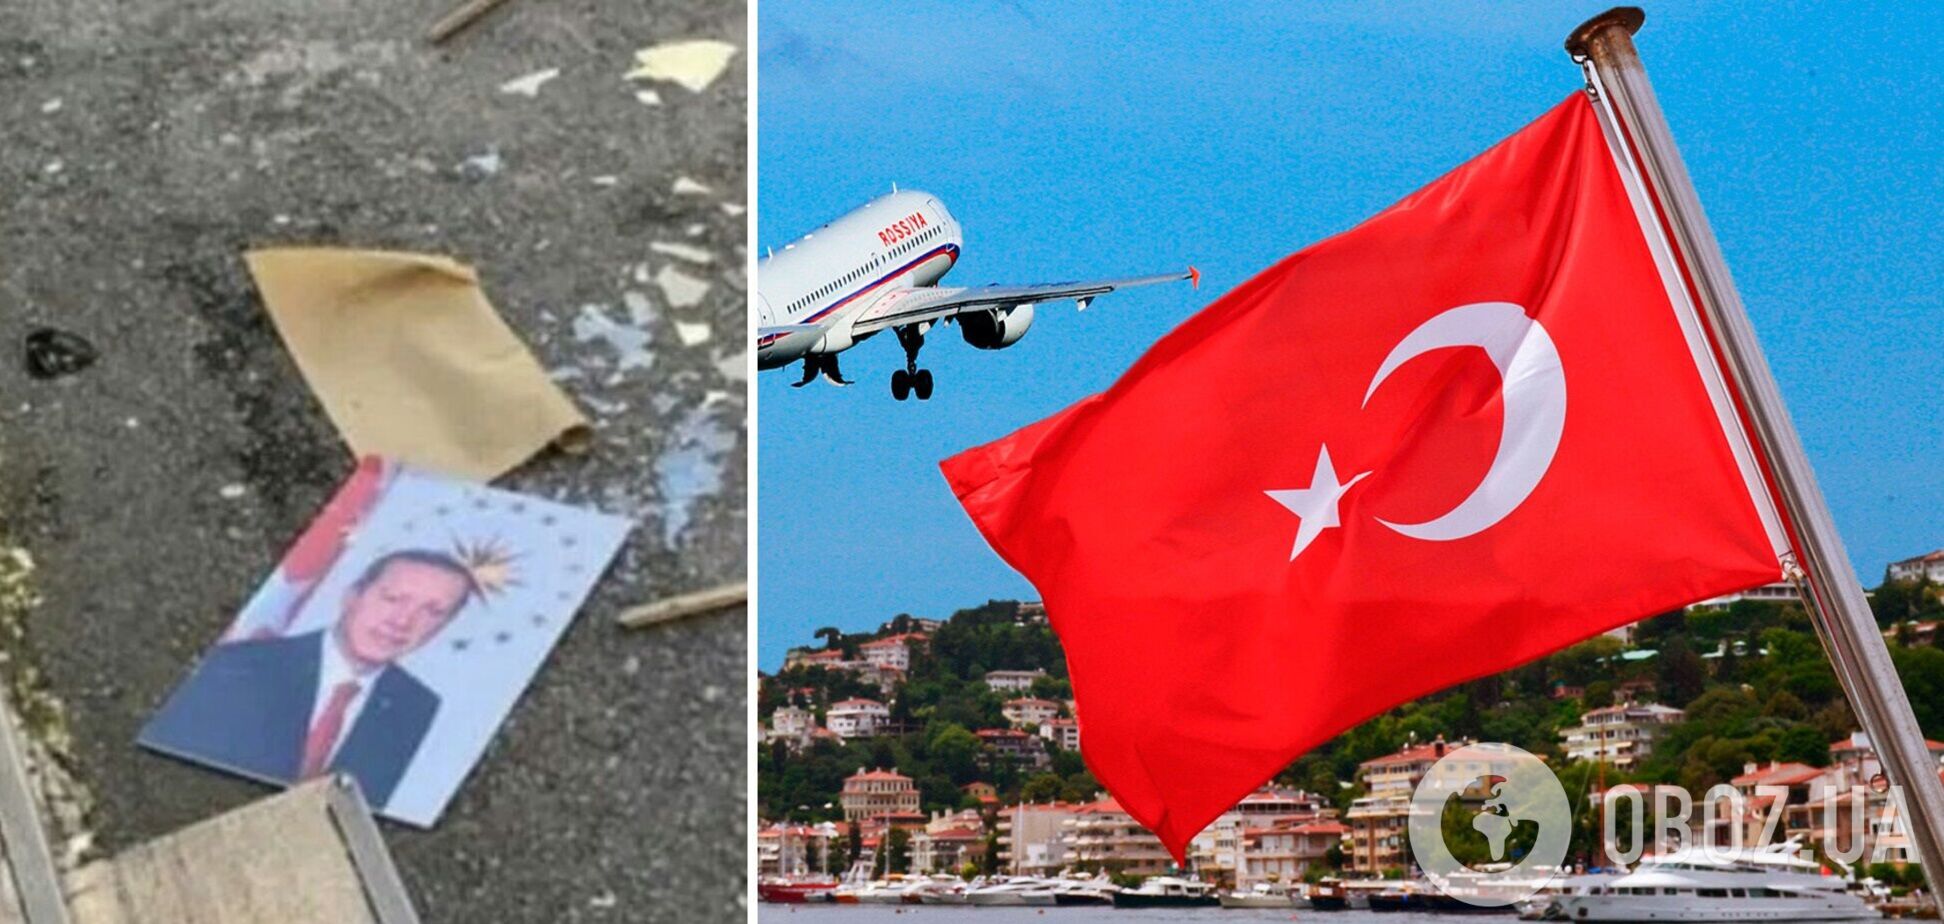 У Туреччині знову протестують проти фінансової політики влади, що призвела до гіперінфляції та обвалу місцевої валюти – ліри